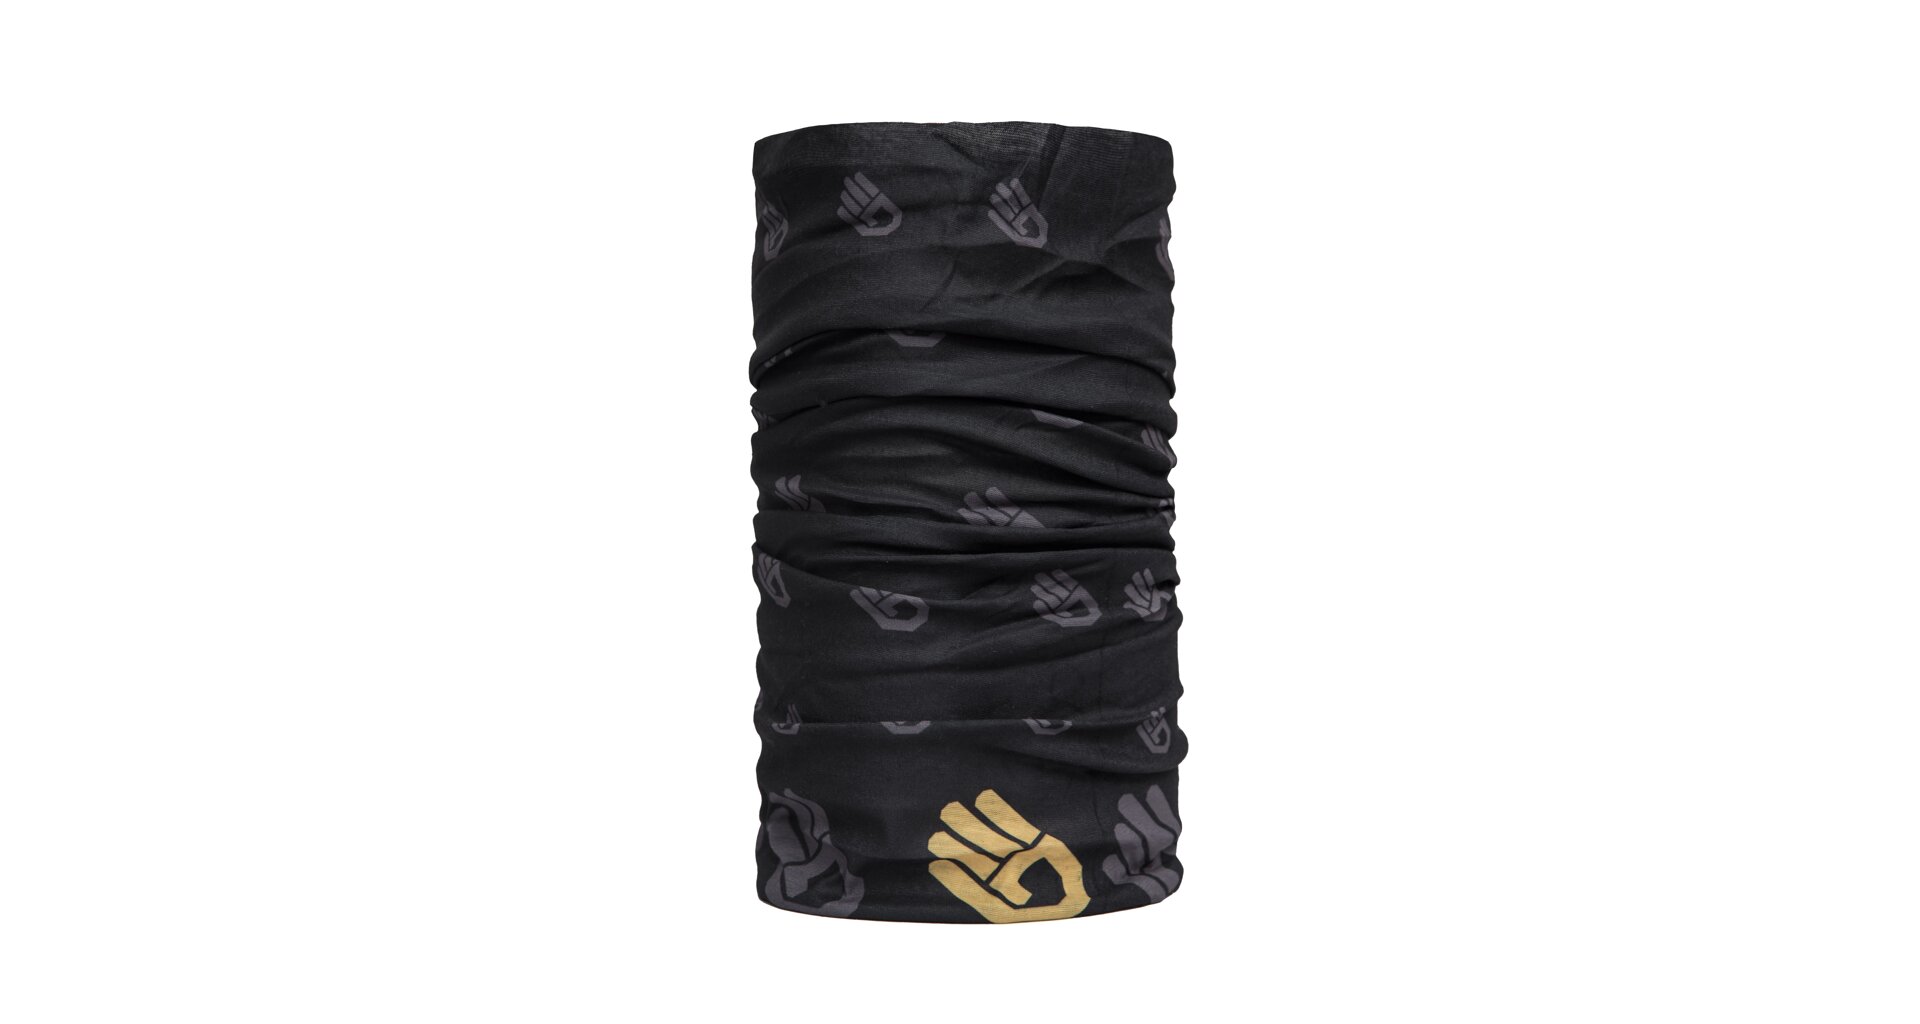 SENSOR TUBE HAND šátek multifunkční černá